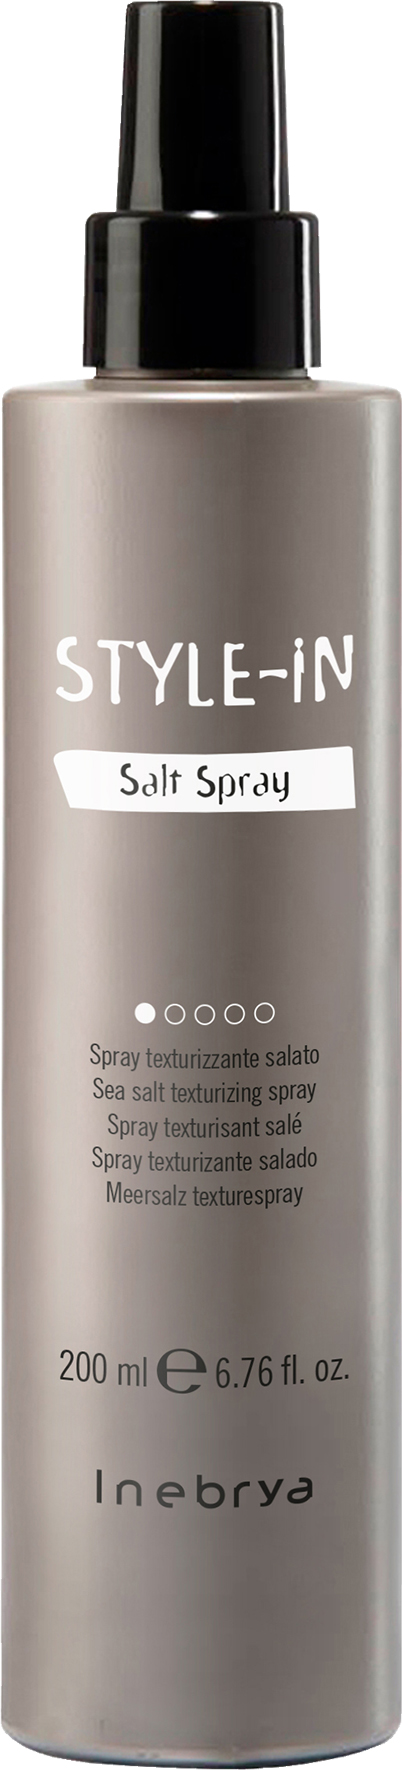 Style in Salt Spray, 200 ml